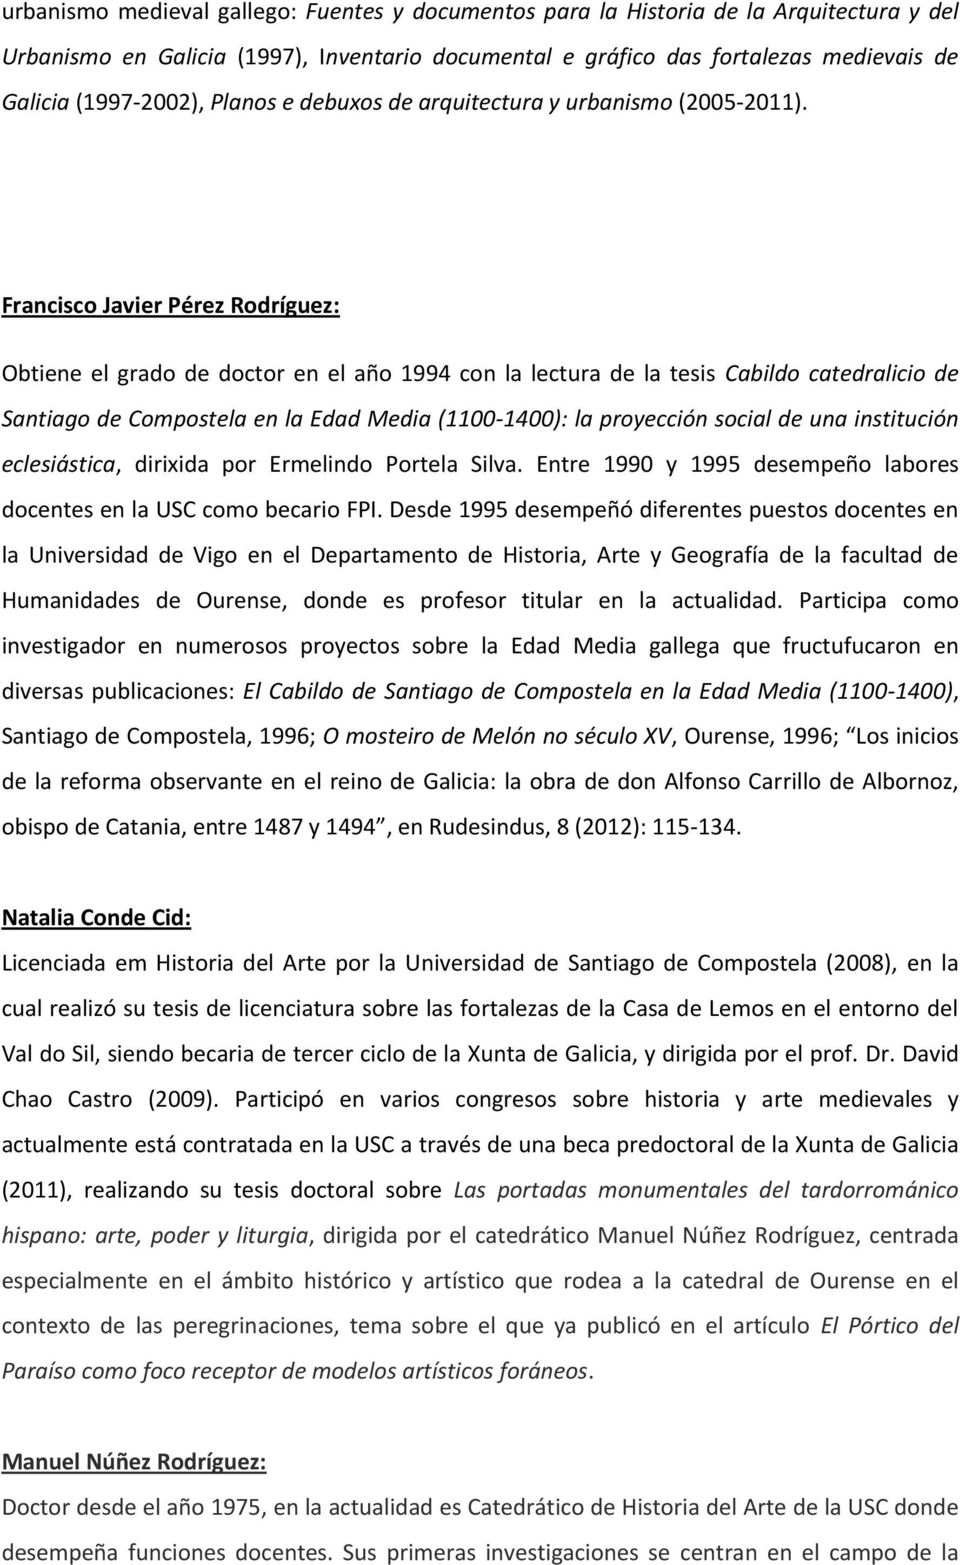 Francisco Javier Pérez Rodríguez: Obtiene el grado de doctor en el año 1994 con la lectura de la tesis Cabildo catedralicio de Santiago de Compostela en la Edad Media (1100-1400): la proyección